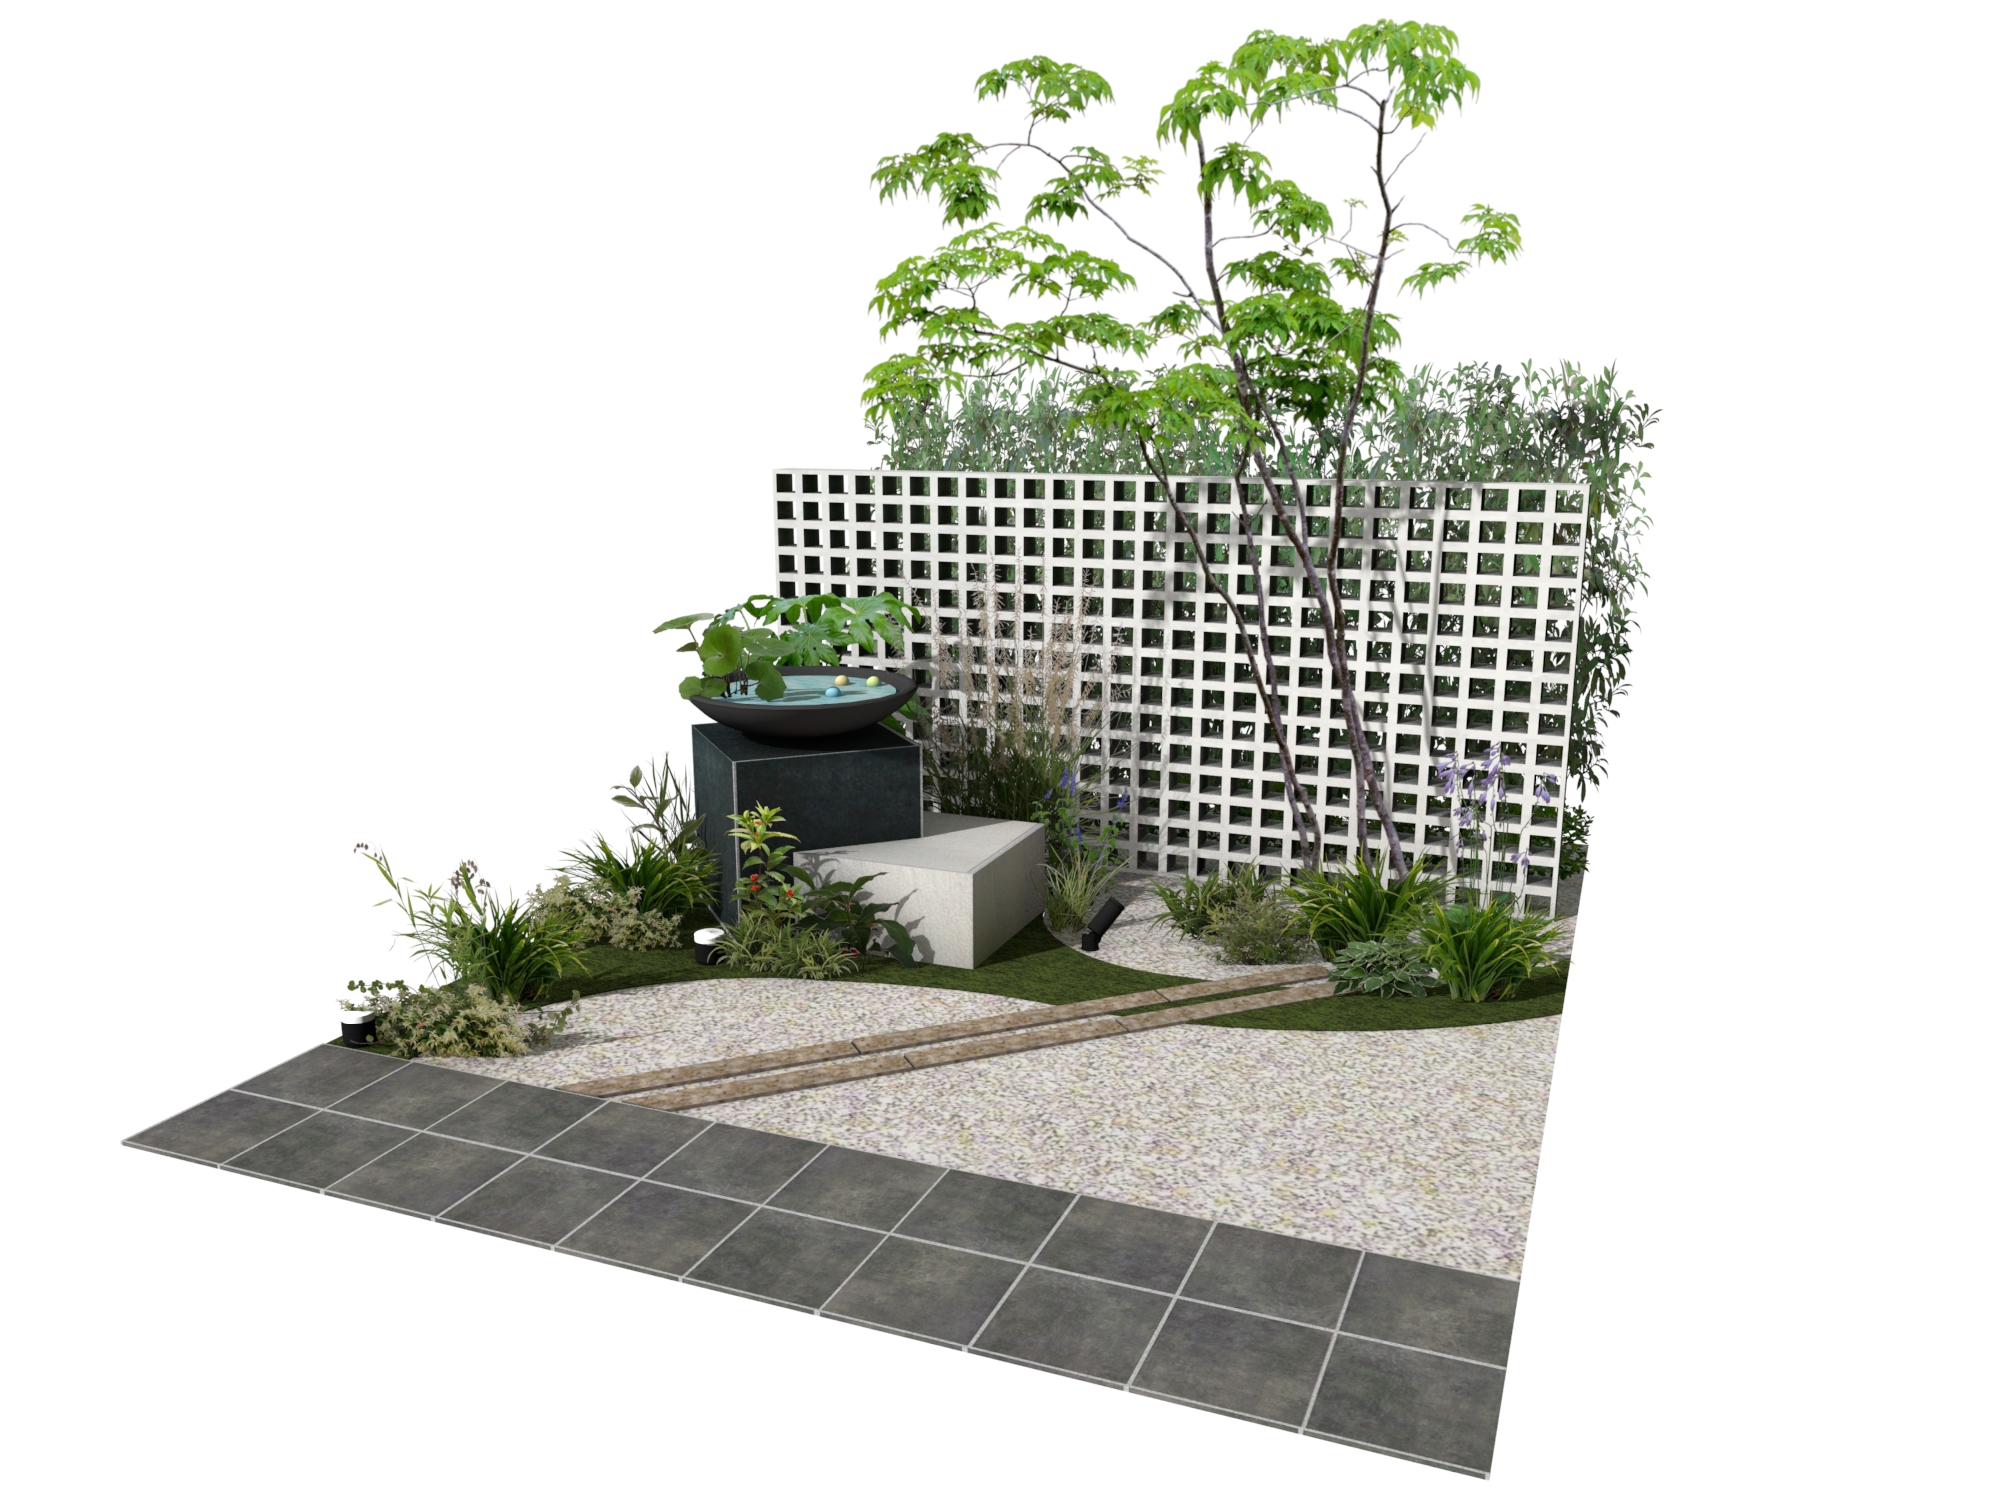 和モダンをイメージした坪庭 エクスプラット エクステリア ガーデンデザイン プラン検索サイト Rikcadデータ無料配信